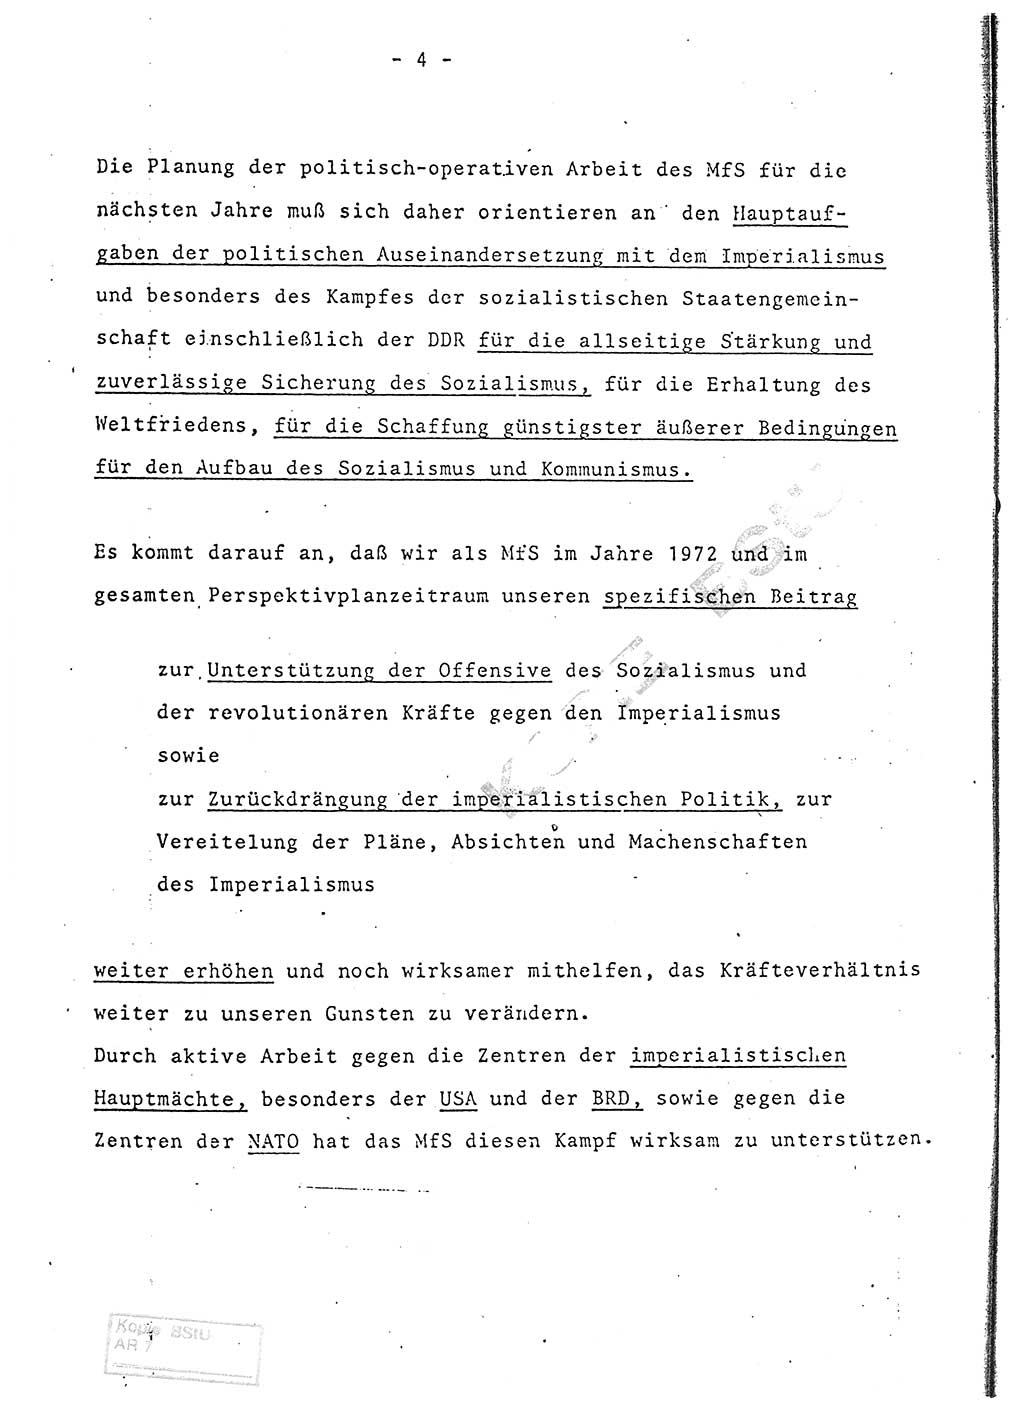 Referat (Entwurf) des Genossen Minister (Generaloberst Erich Mielke) auf der Dienstkonferenz 1972, Ministerium für Staatssicherheit (MfS) [Deutsche Demokratische Republik (DDR)], Der Minister, Geheime Verschlußsache (GVS) 008-150/72, Berlin 25.2.1972, Seite 4 (Ref. Entw. DK MfS DDR Min. GVS 008-150/72 1972, S. 4)